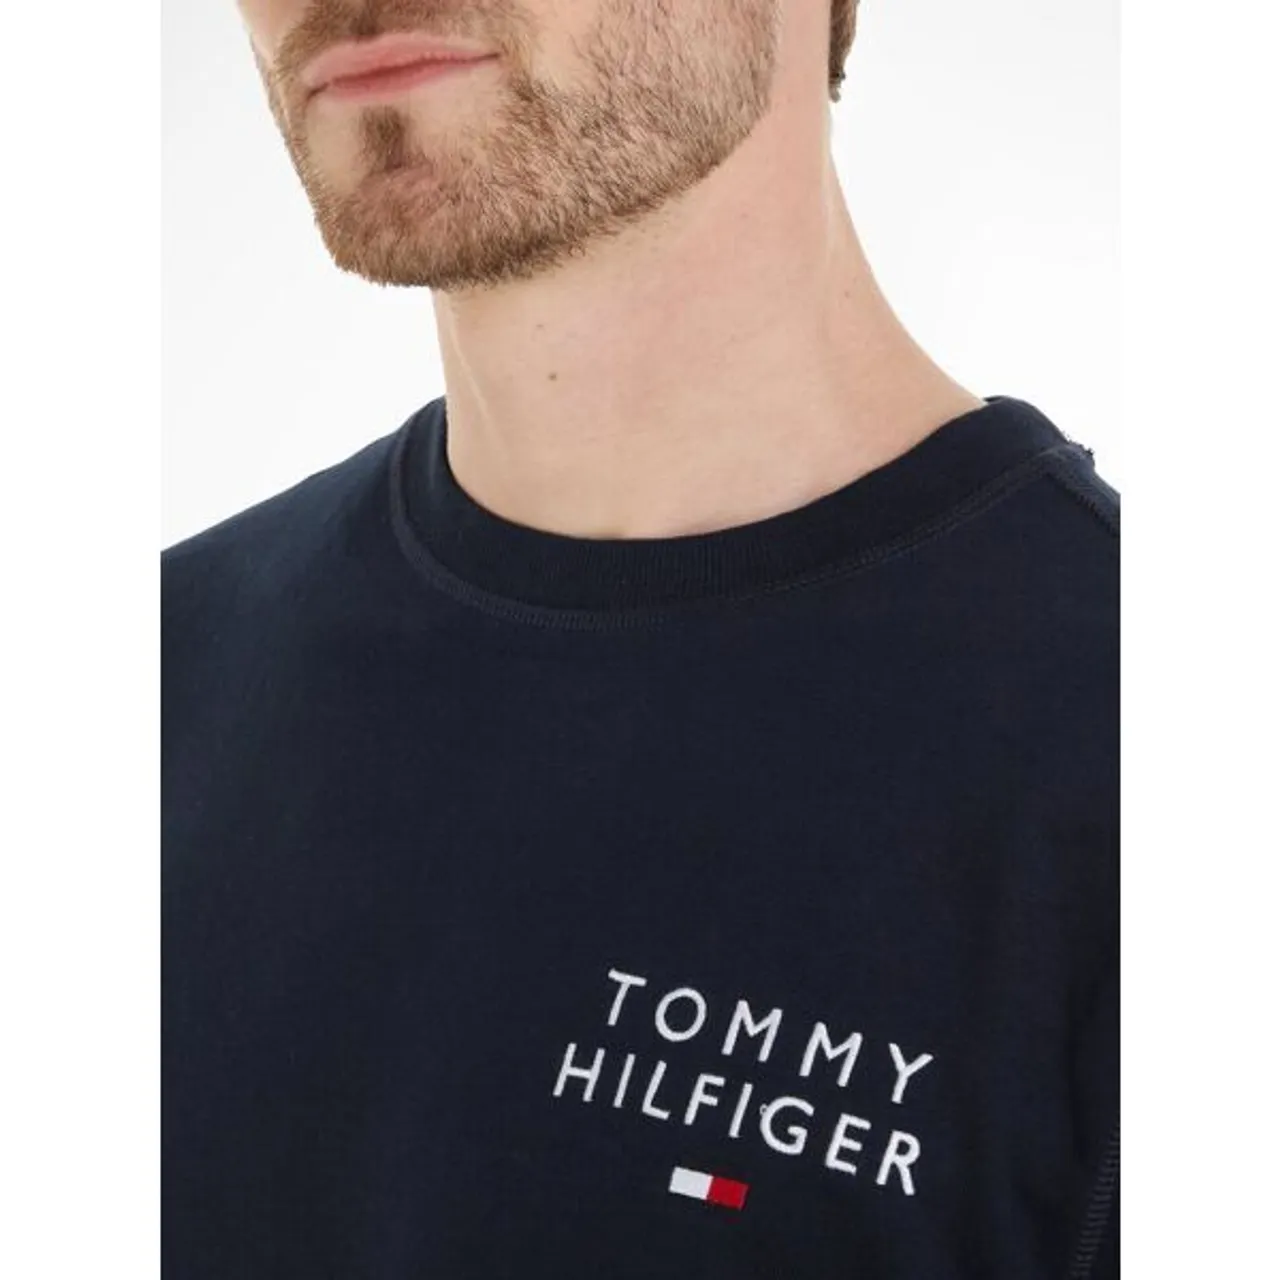 Sweatshirt TOMMY HILFIGER UNDERWEAR "TRACK TOP HWK" Gr. S (48), blau (dunkelblau) Herren Sweatshirts mit Tommy Hilfiger Markenlabel